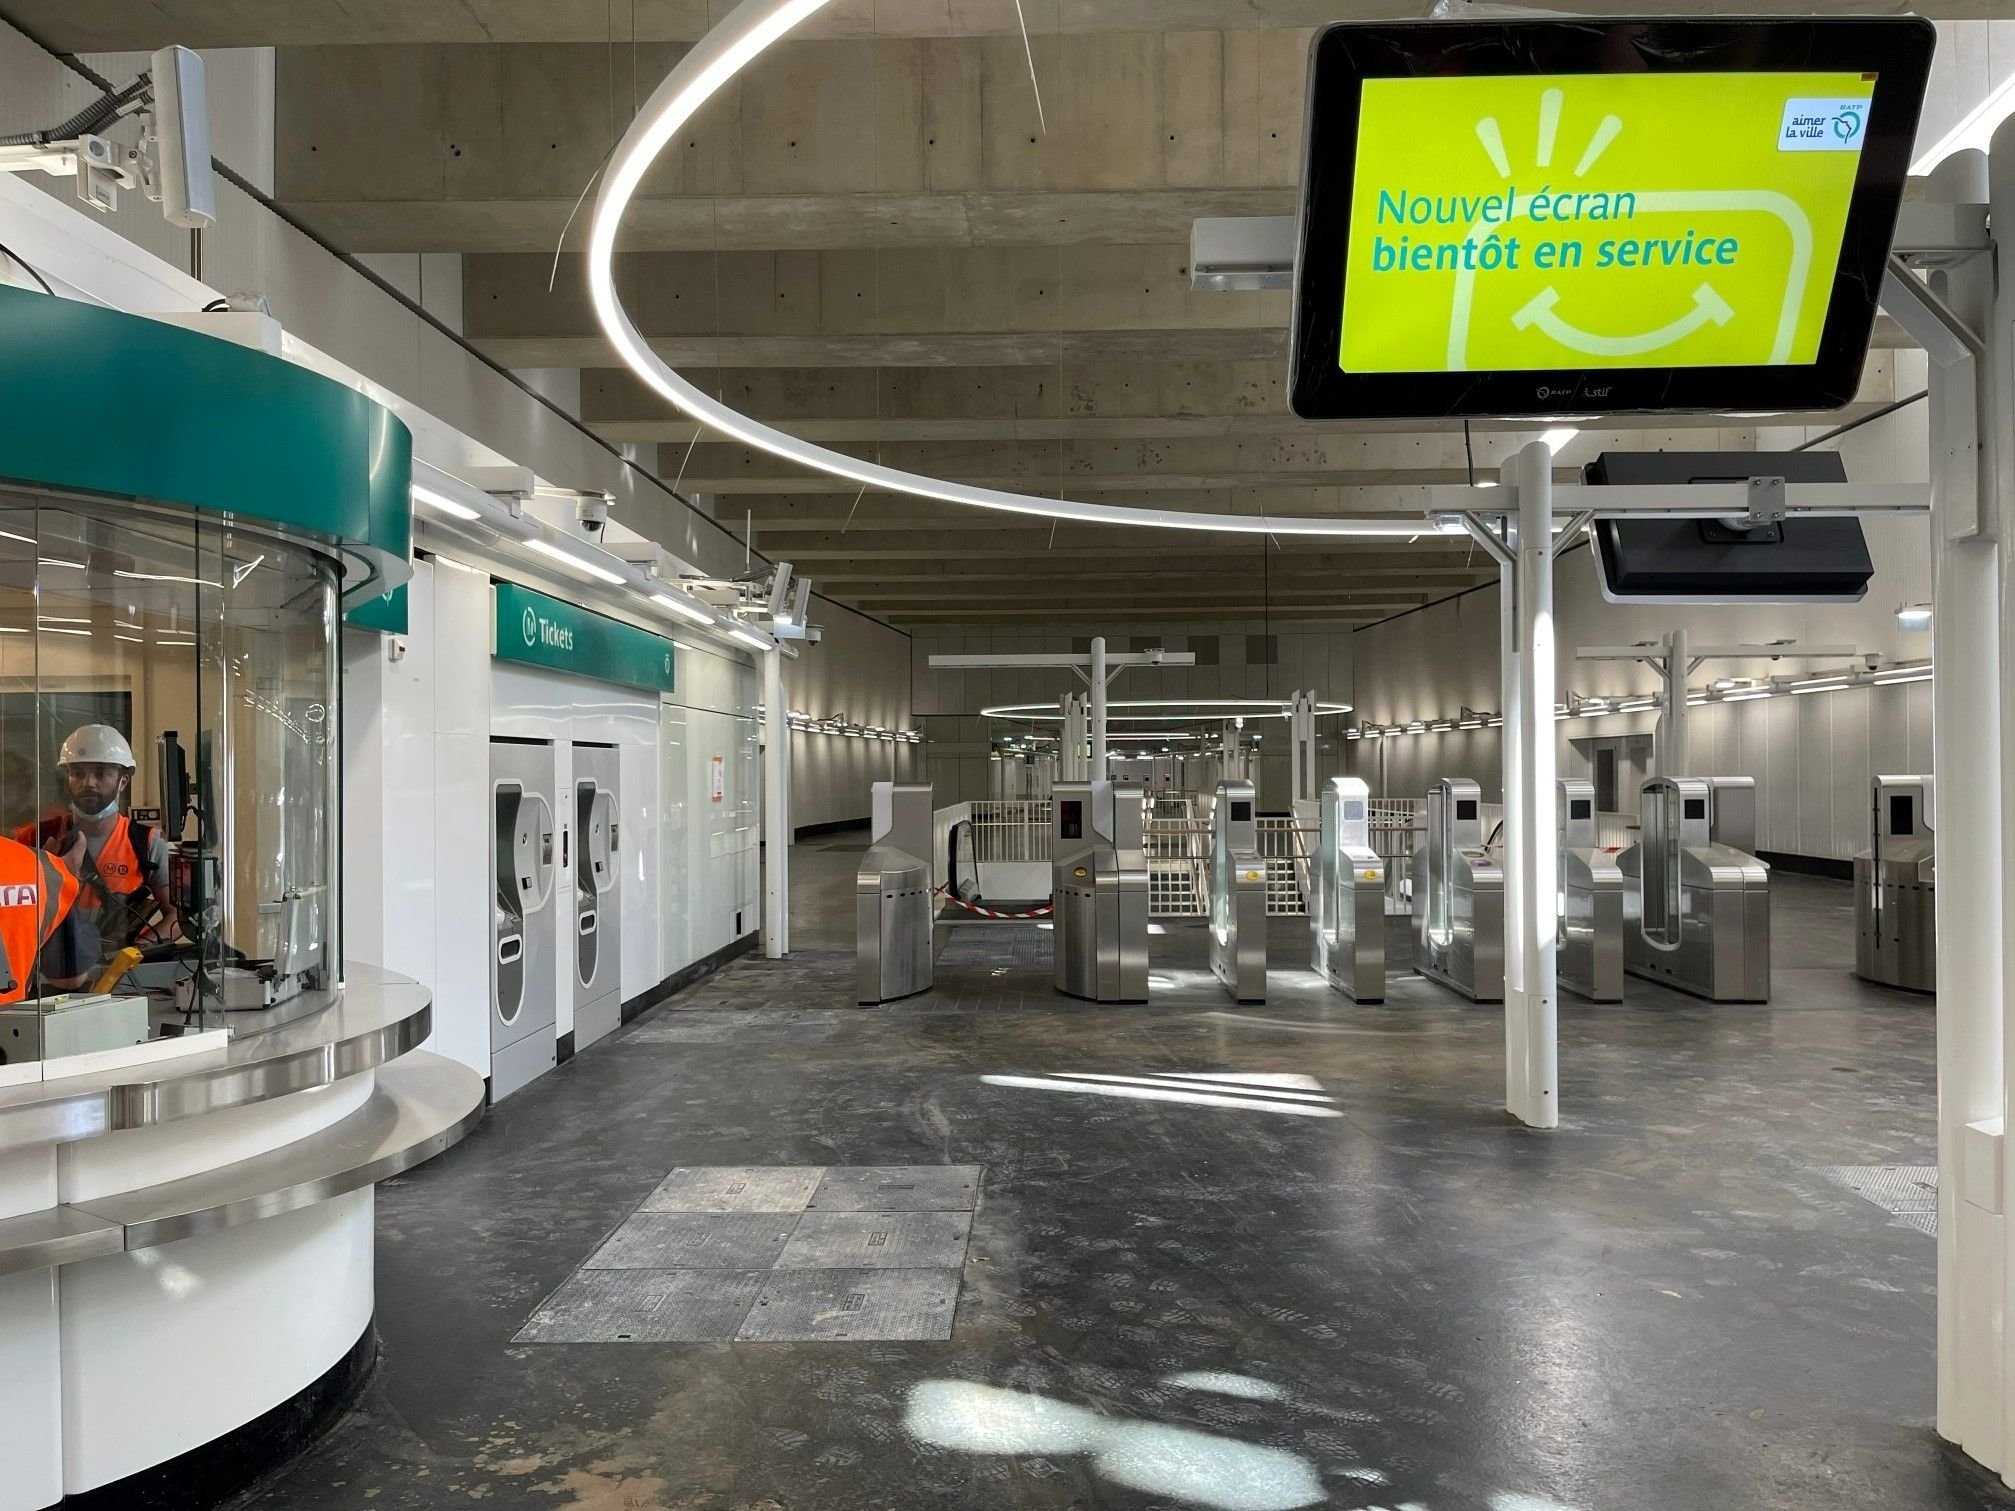 Aubervilliers, automne 2021. Le prolongement de la ligne 12 à Aubervilliers devrait entrer en service au printemps 2022. Il comprendra deux nouvelles stations : Aimé-Césaire et Mairie-d'Aubervilliers. /RATP